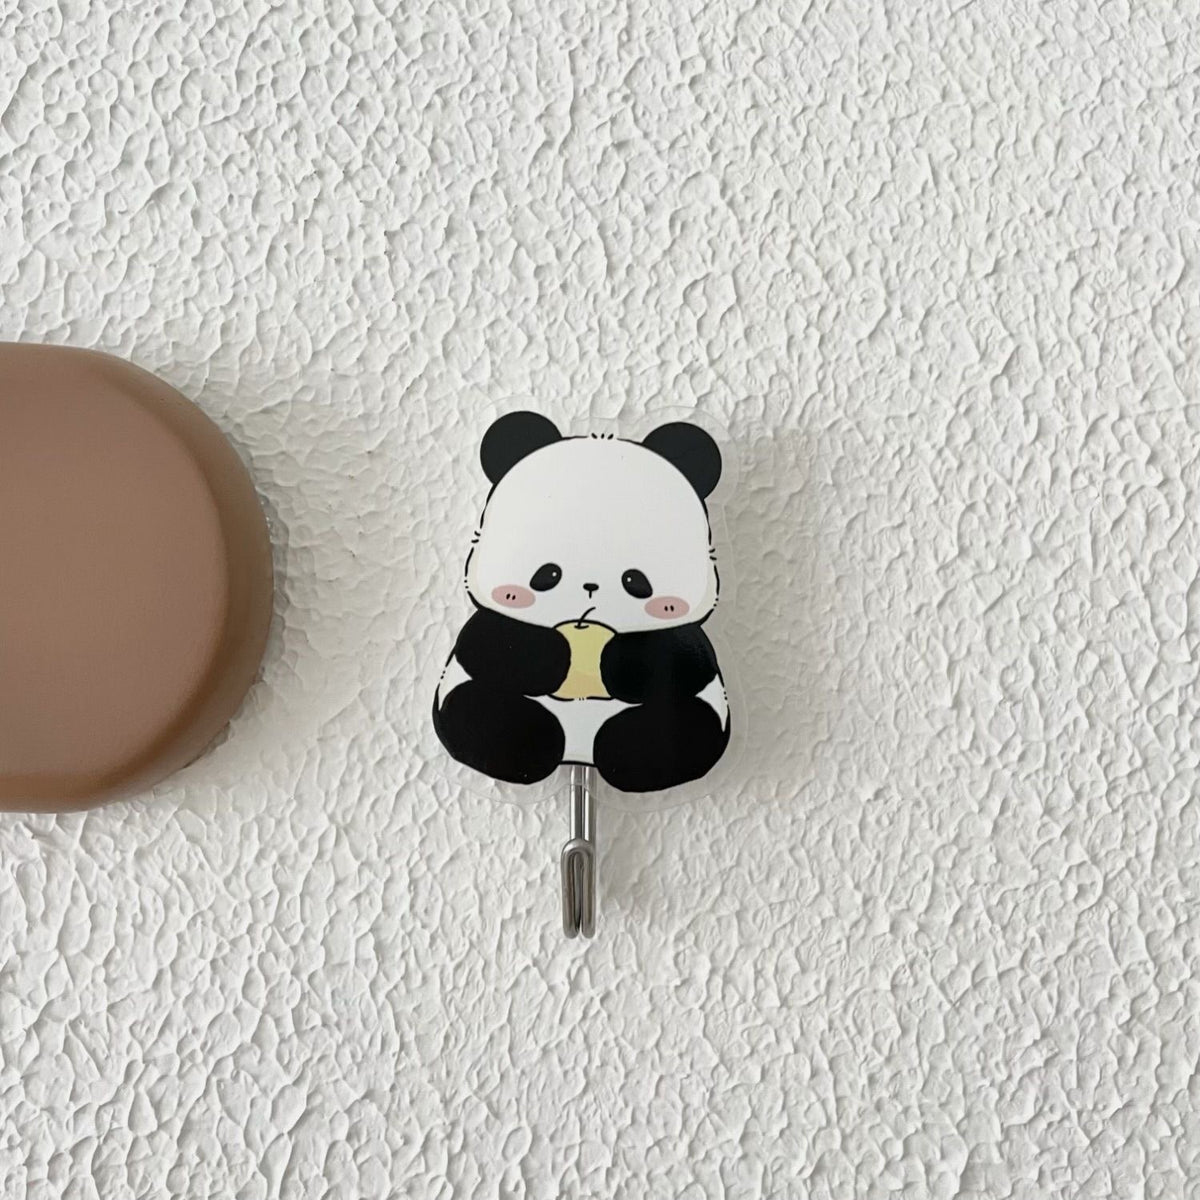 Cute panda bathroom hook